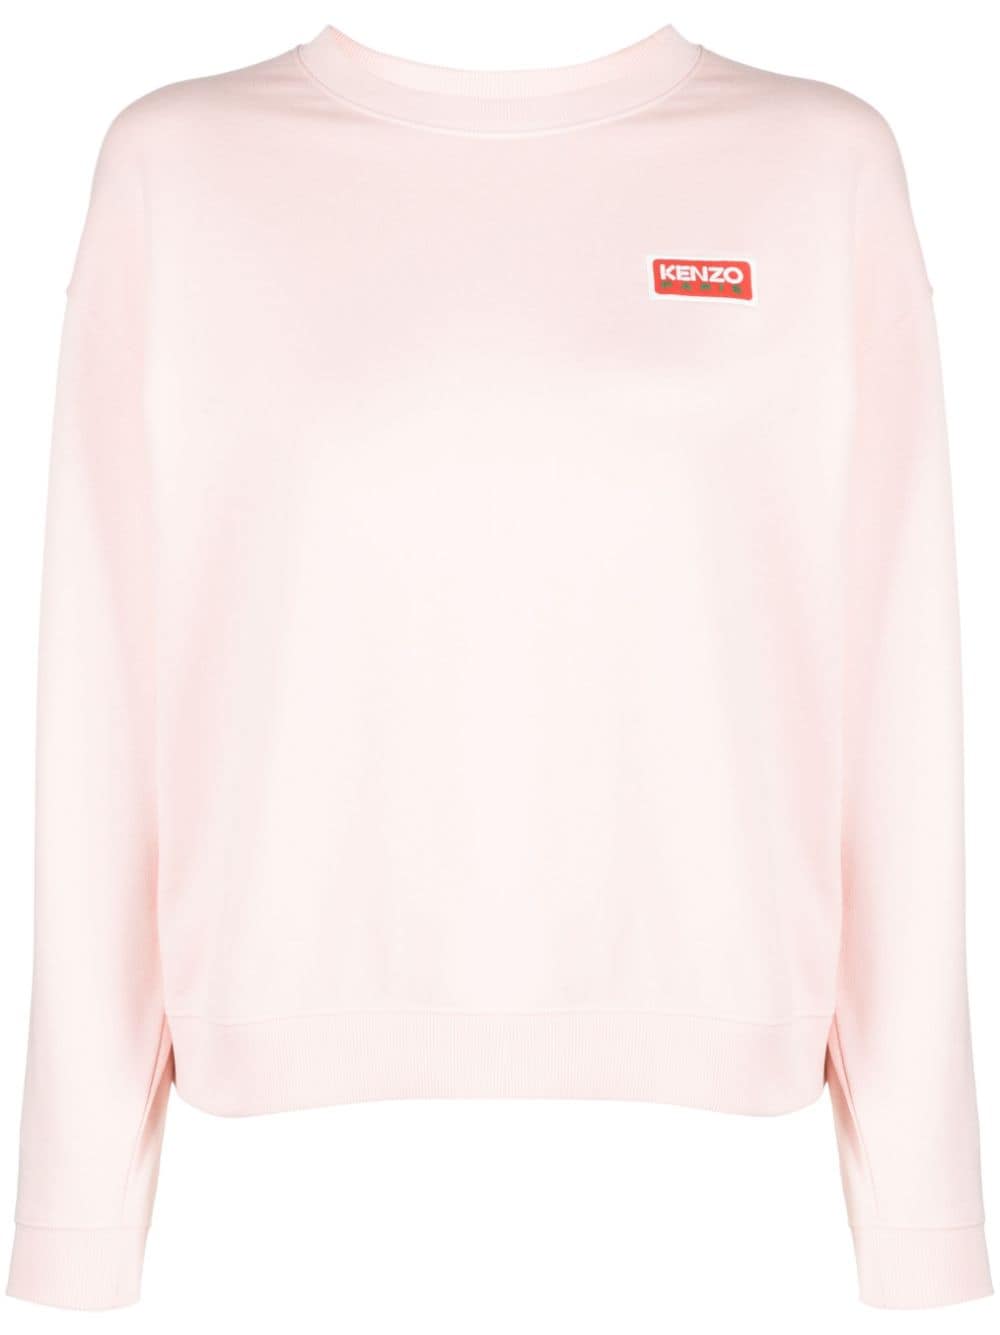 Kenzo cotton sweatshirt